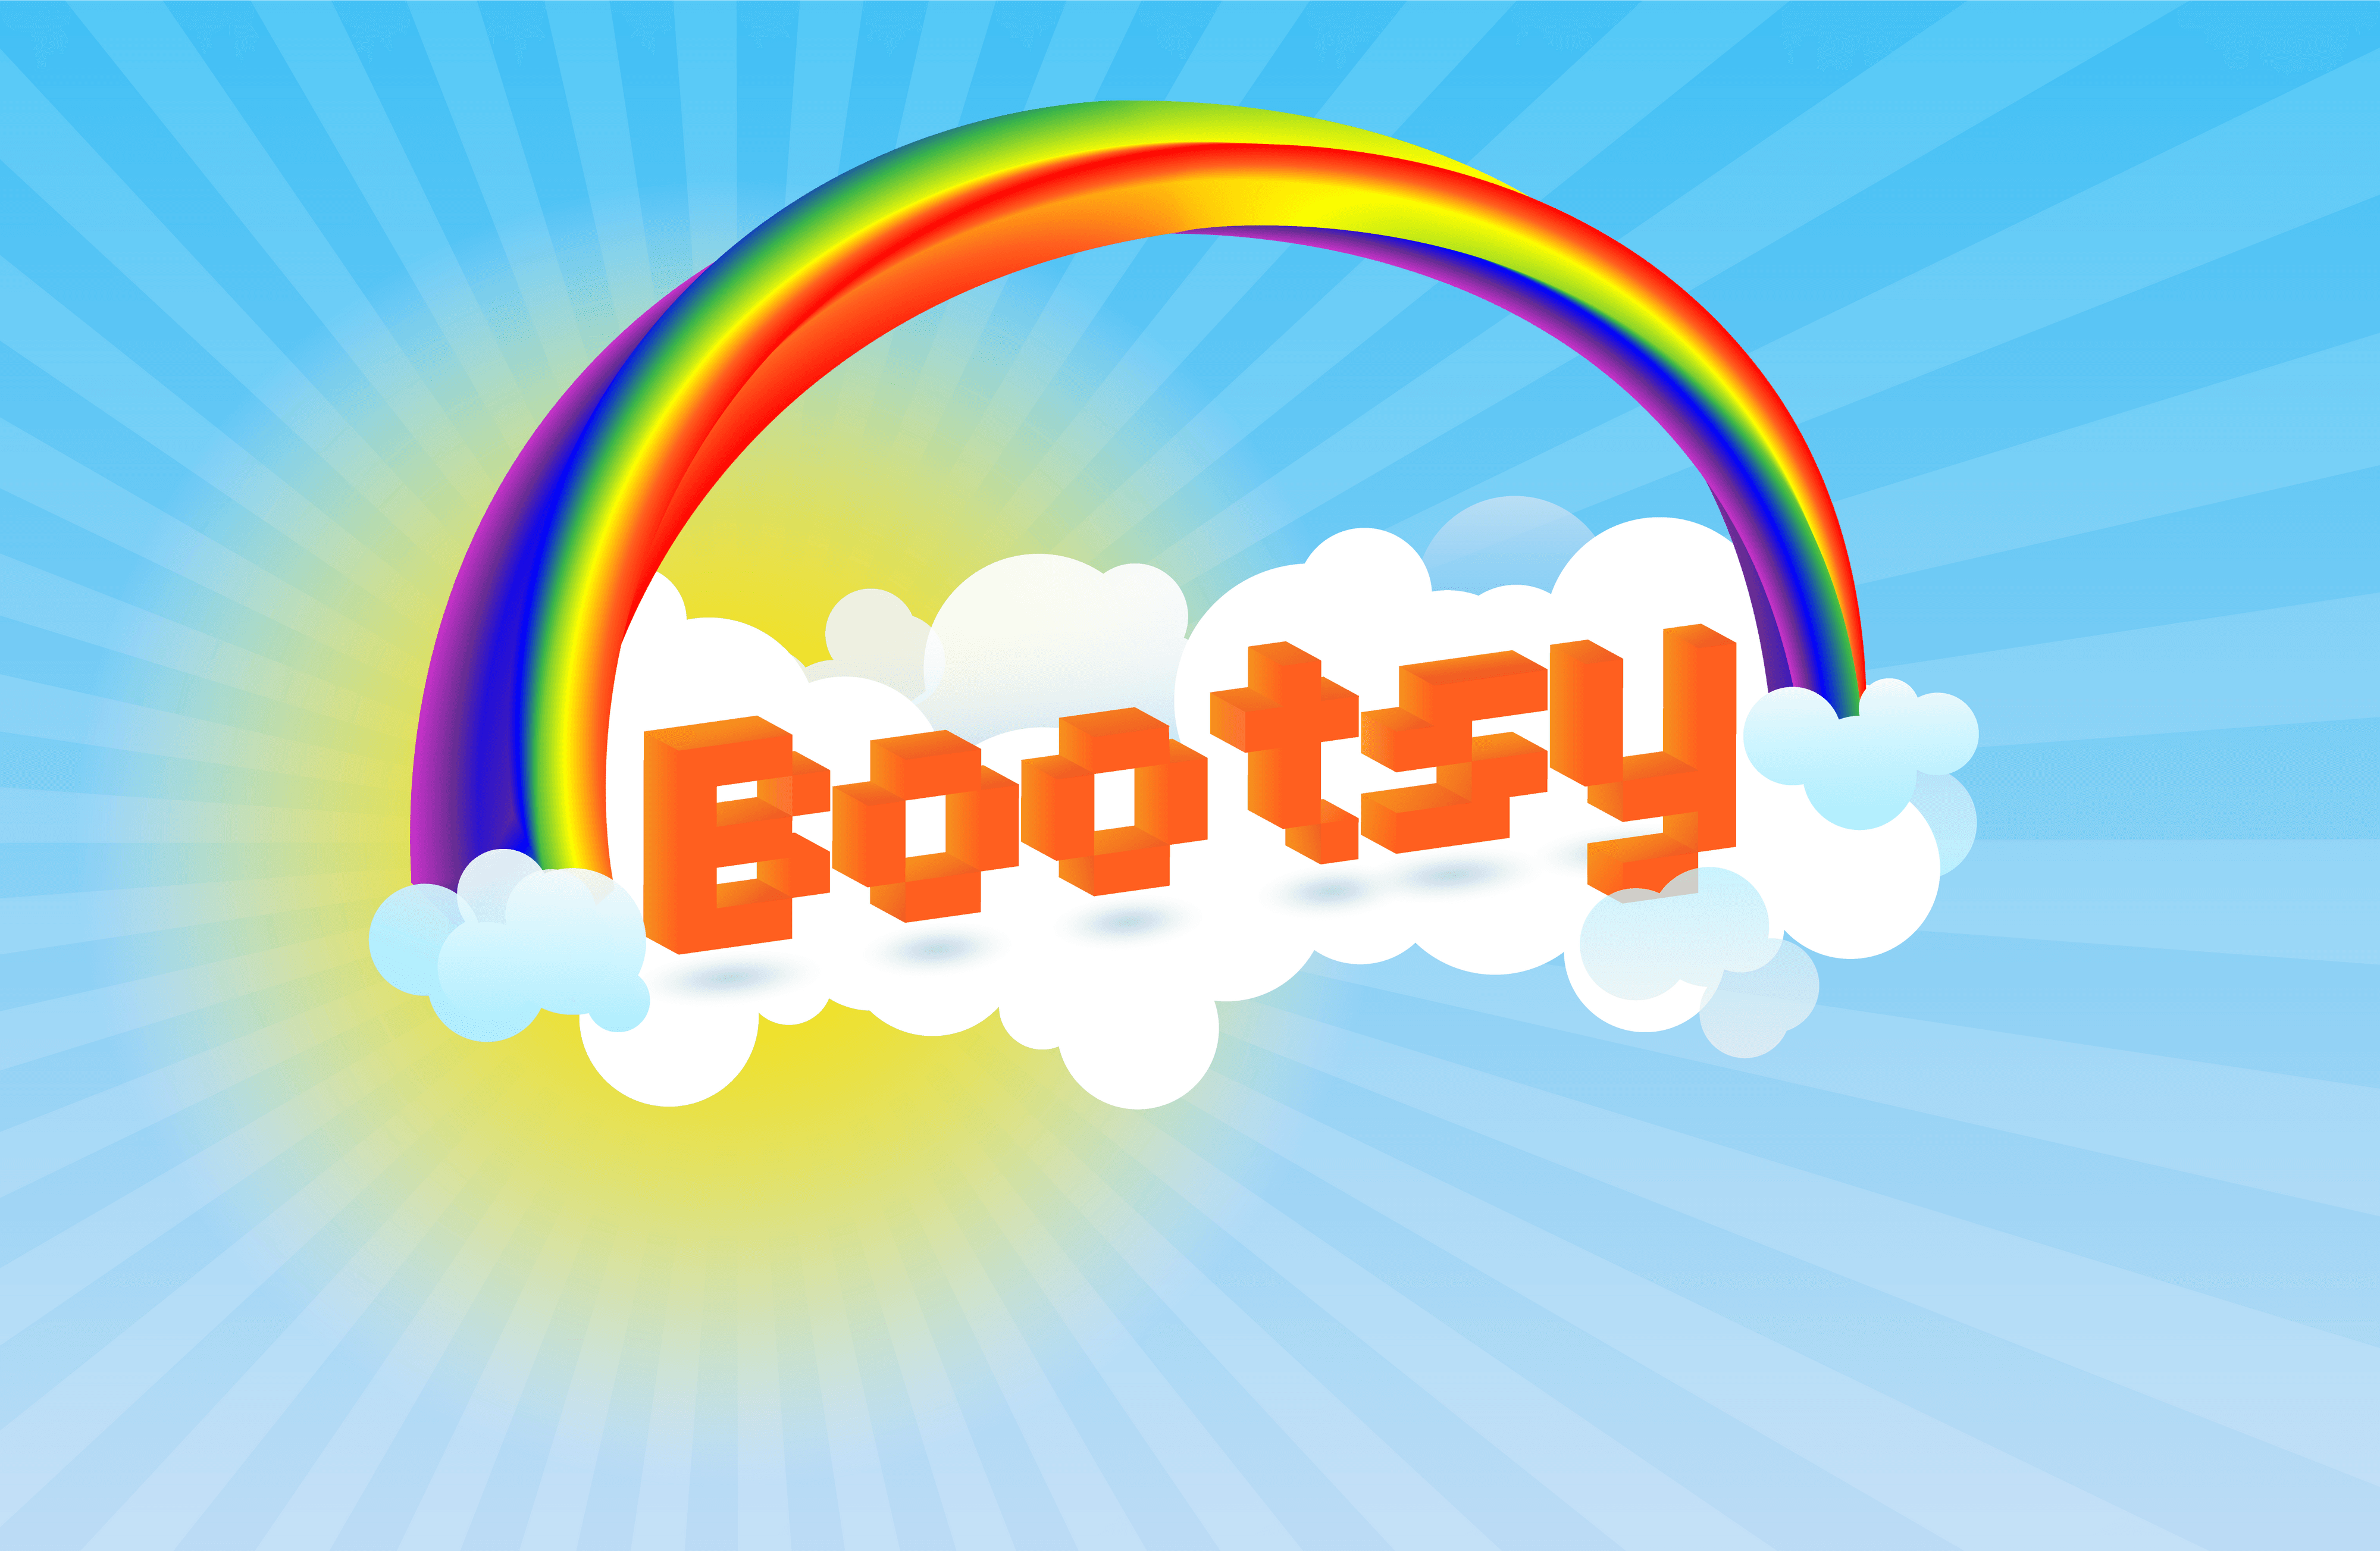 Bootsy